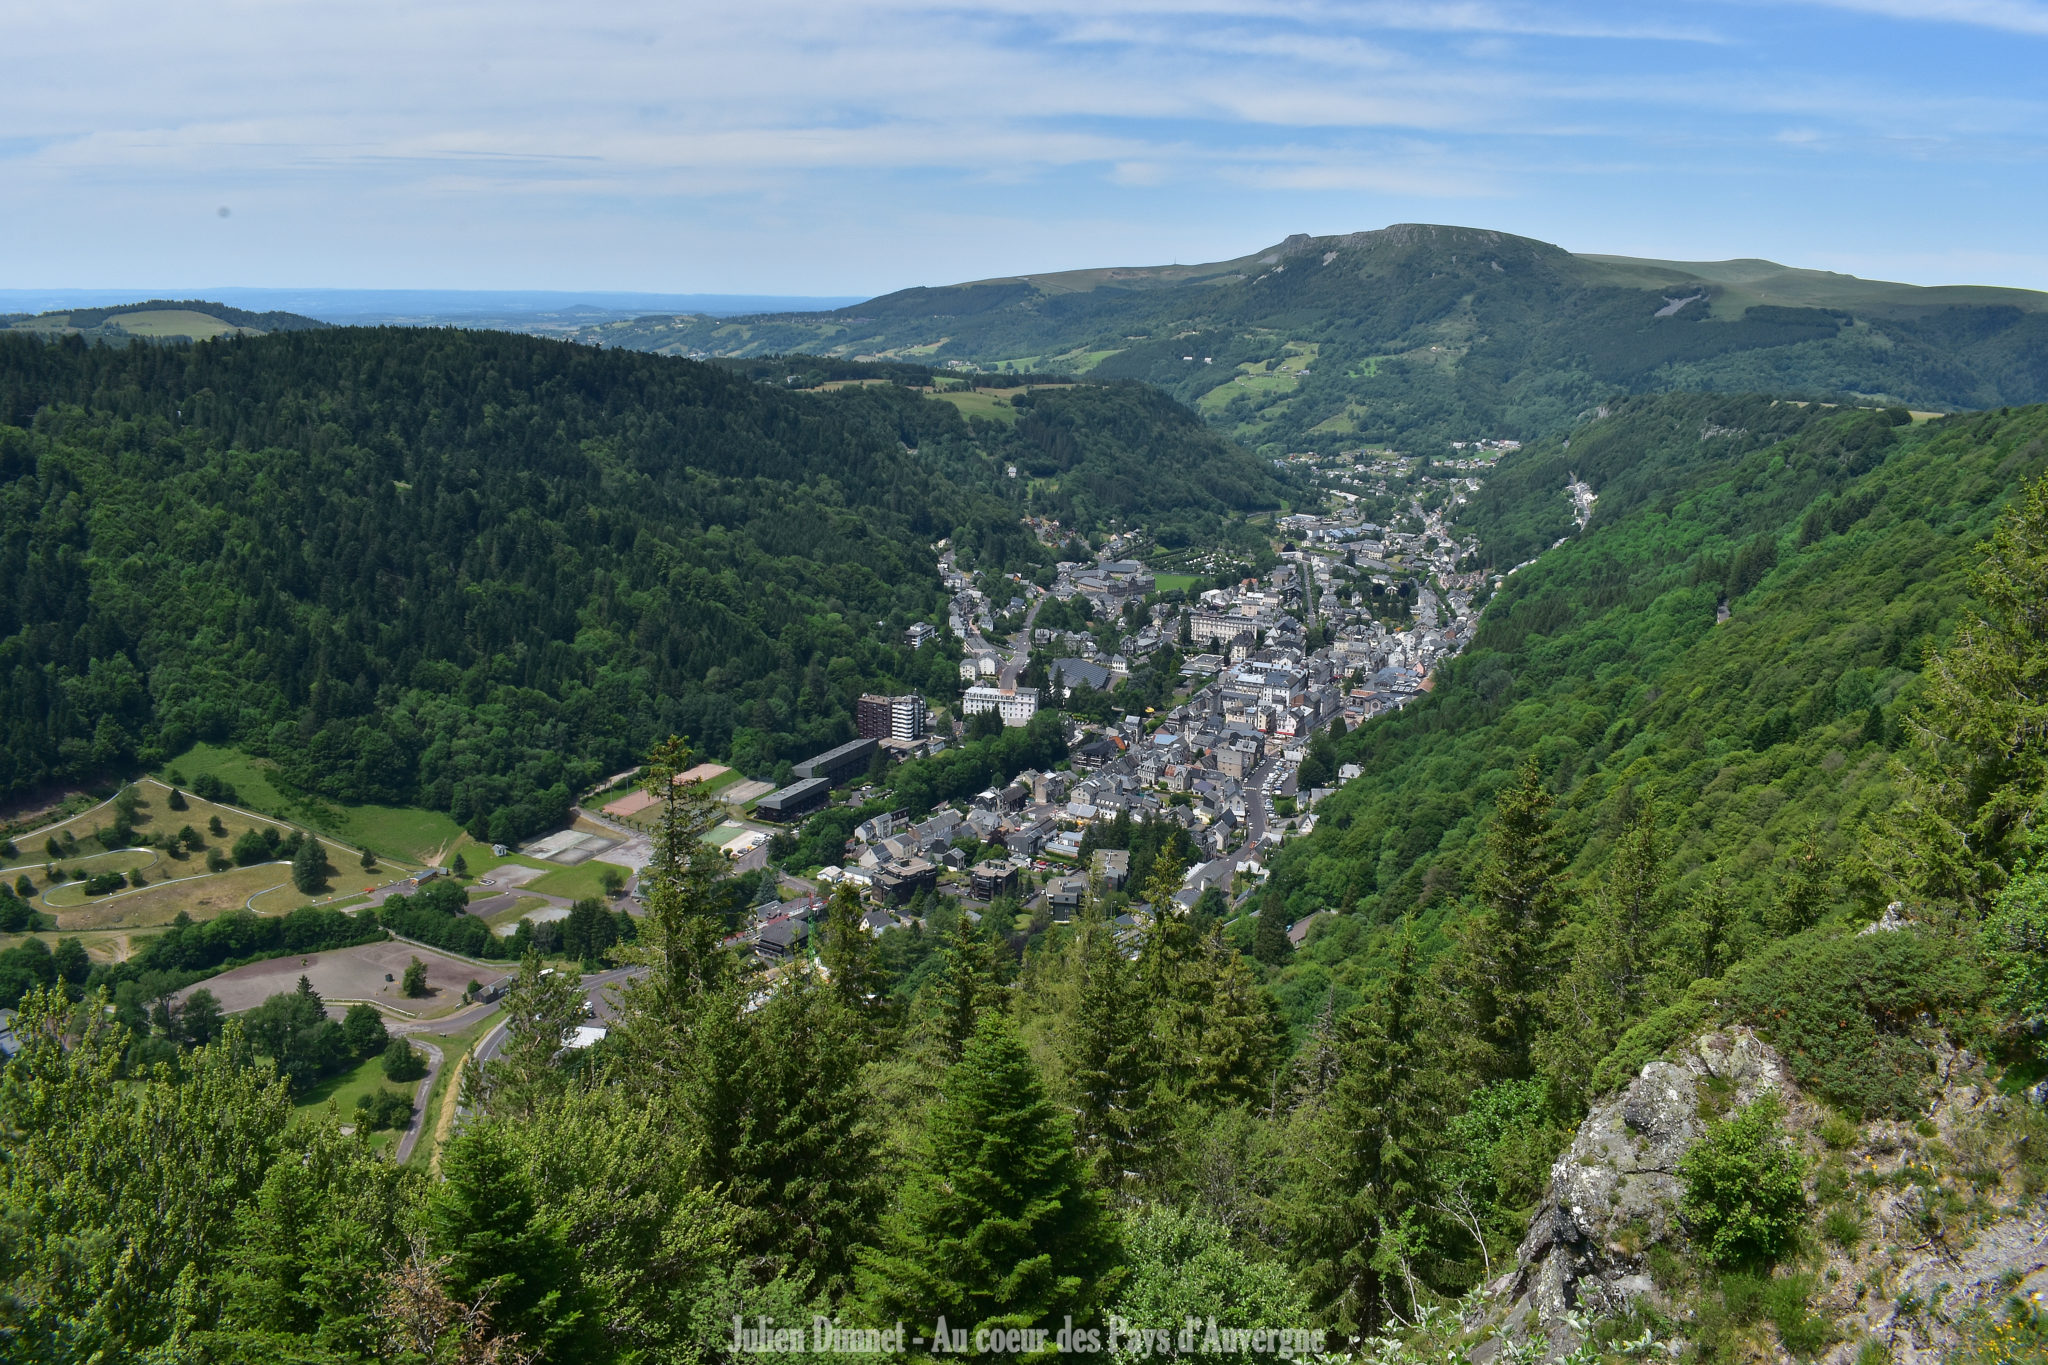  Mont Dore  63 Au C ur des Pays d Auvergne 